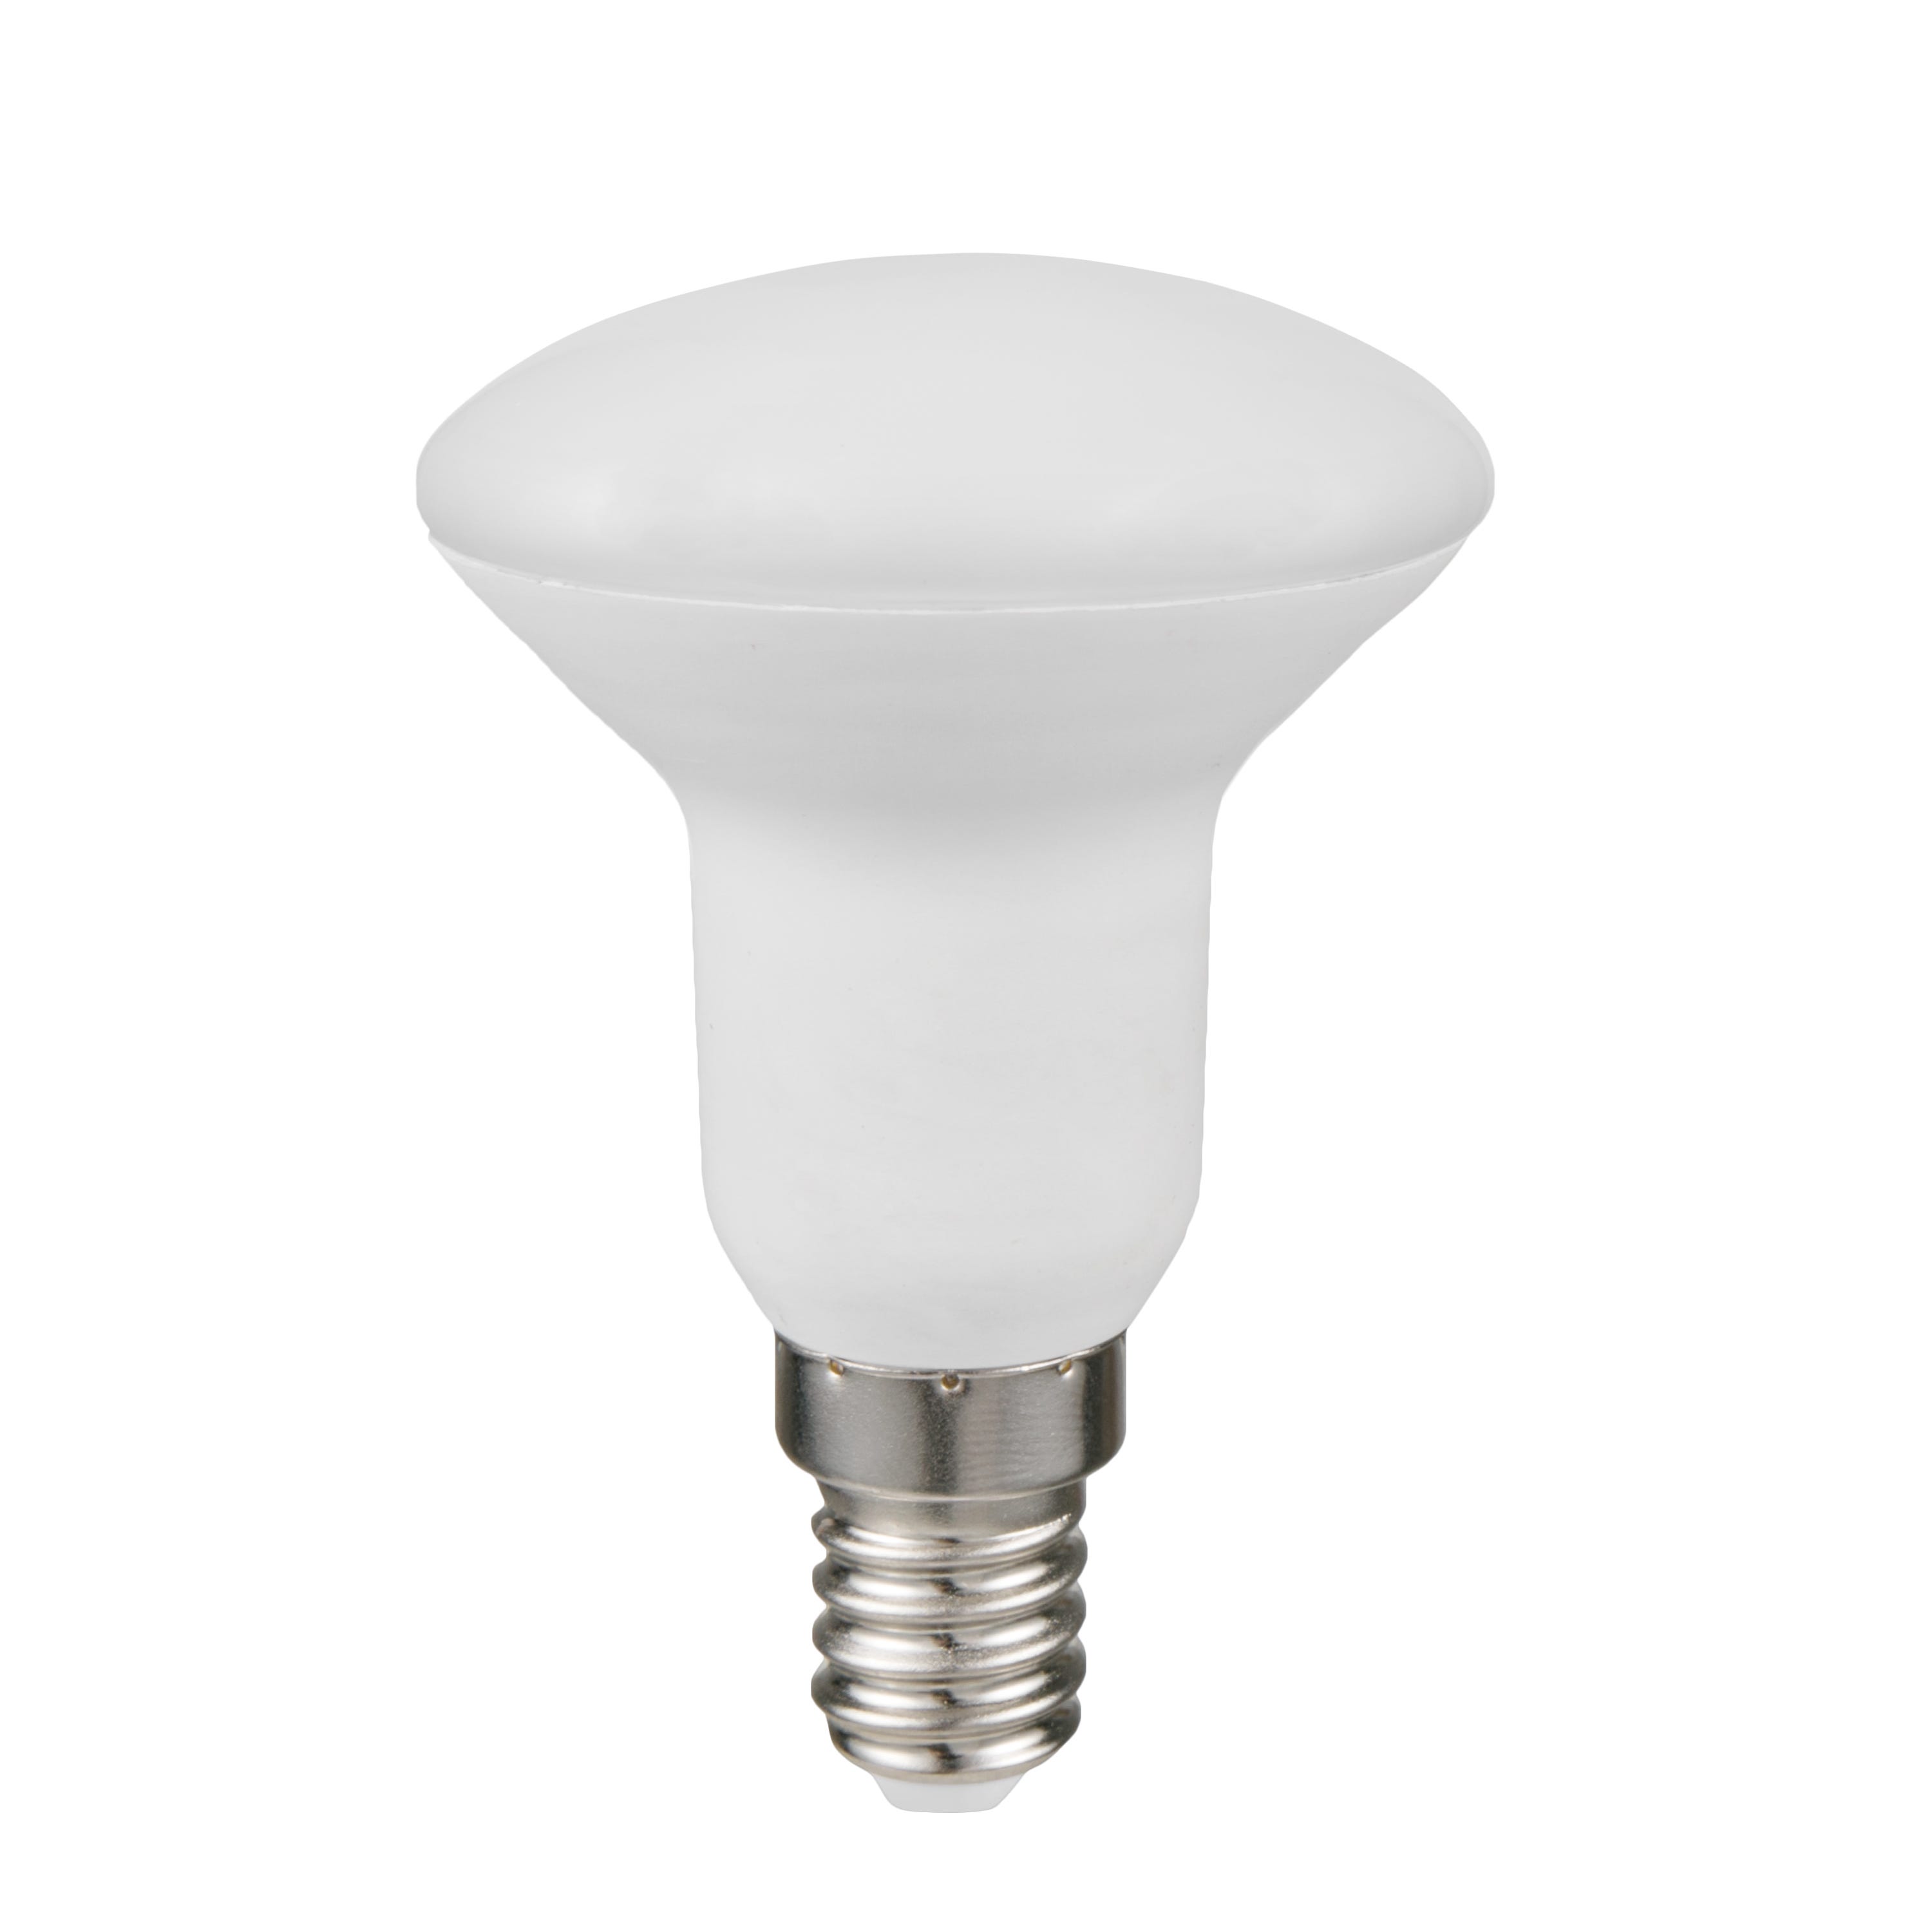 LEDGLE Petite Ampoules LED E14, Reflecteur 8W 700lm Équivalent Ampoules  Conventionnelles 80W, avec culot à vis, 3000K Blanc Chaud, Faisceau de  360°